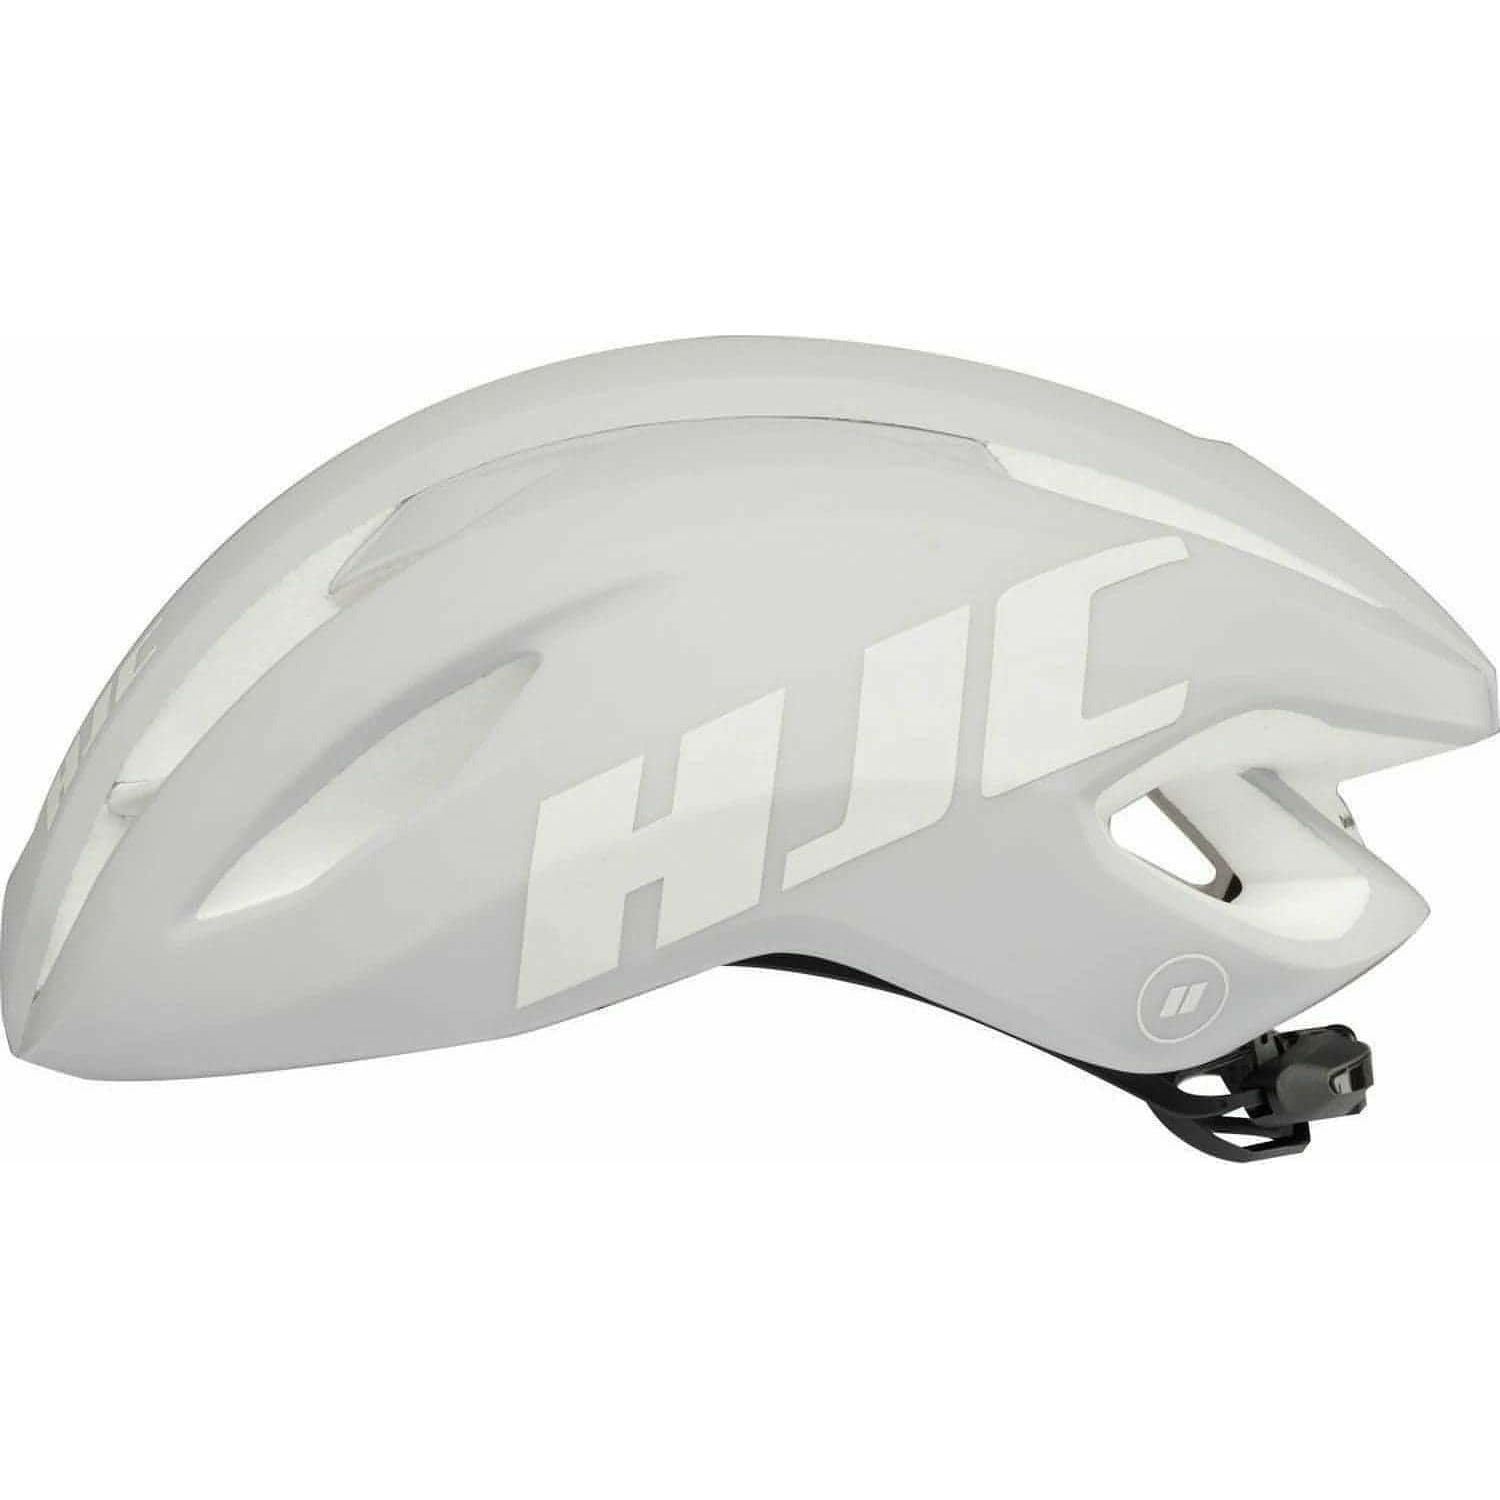 HJC Valeco Road Cycling Helmet - White - Start Fitness